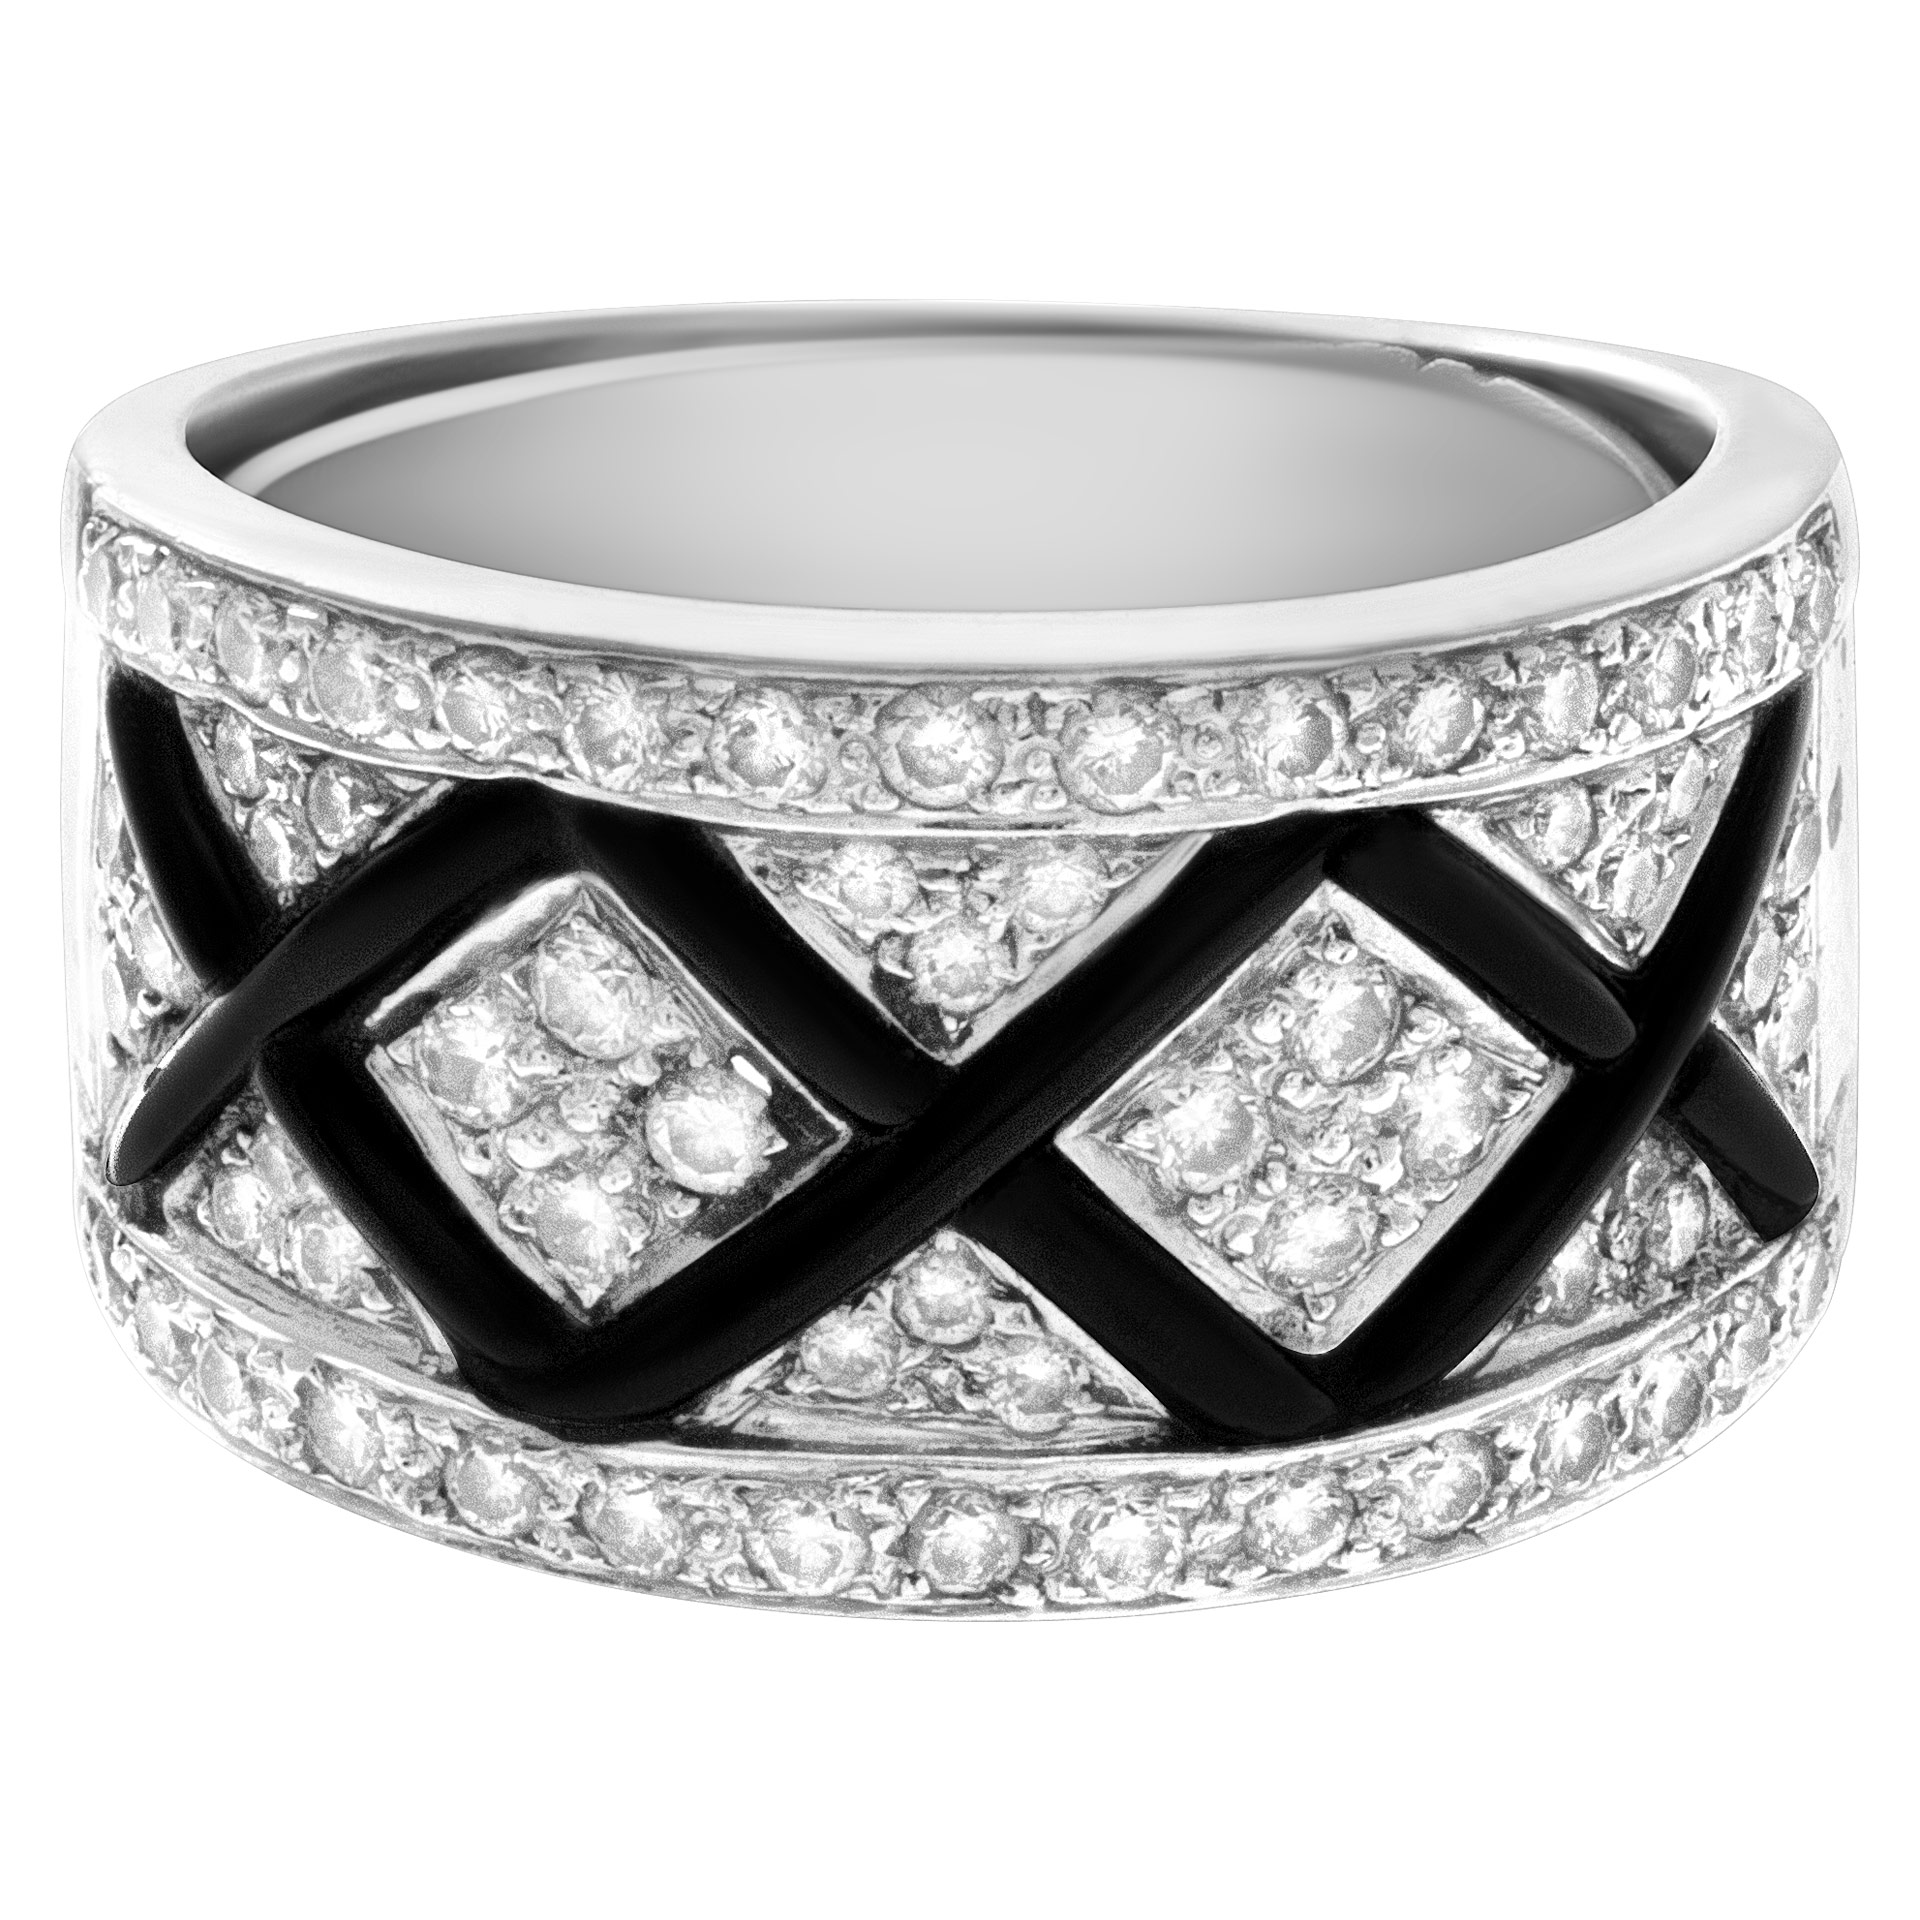 Black enamel and diamond ring in 18k white gold. 1.00 carats in diamonds